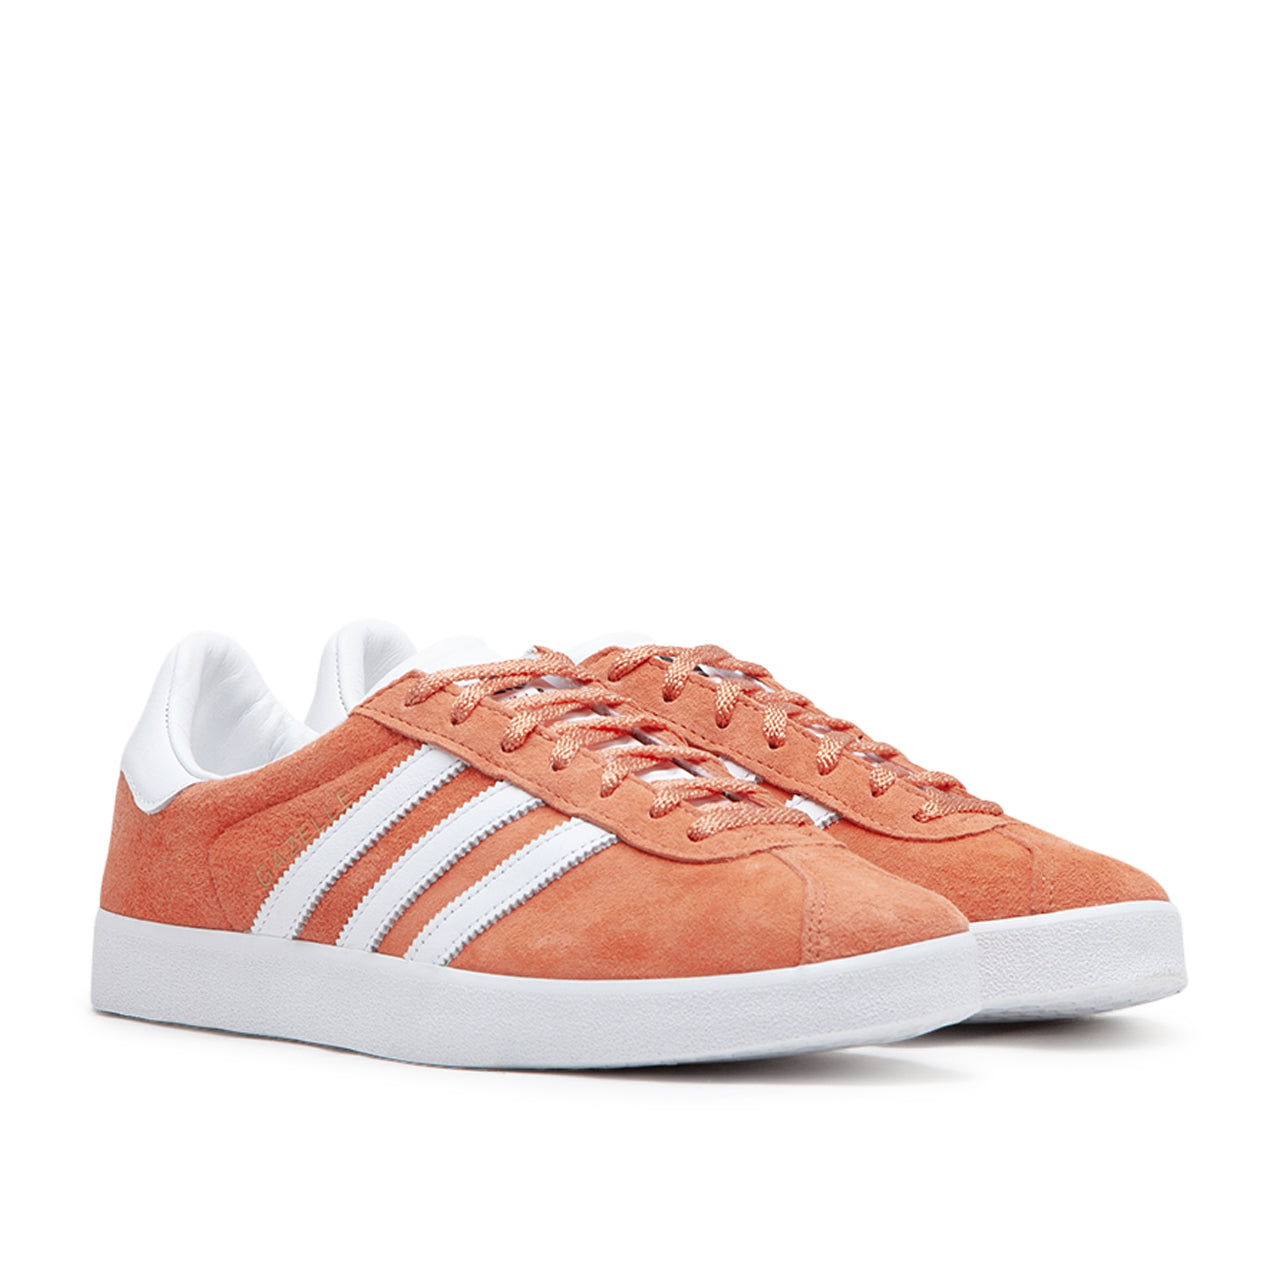 adidas Gazelle 85 (Orange)  - Allike Store